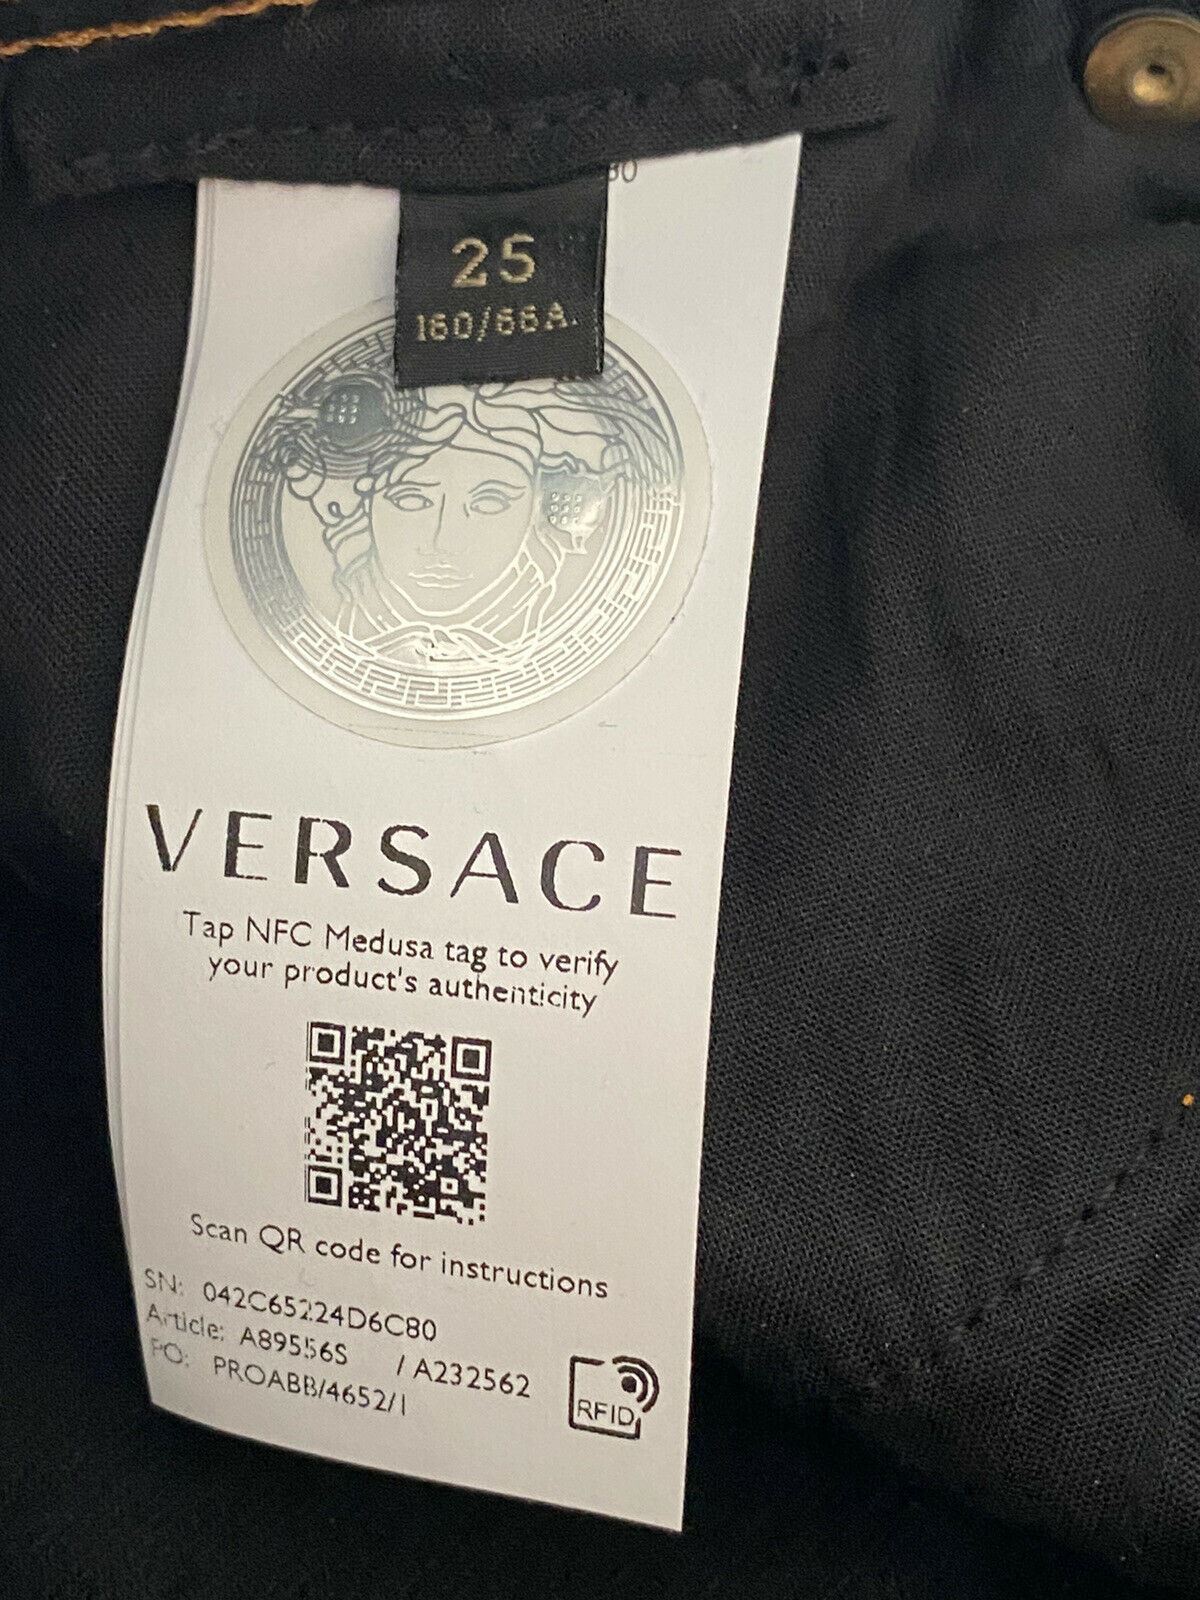 Neu mit Etikett: 500 $ Versace Damen-Denim-Jeans in Schwarz, Größe 25 US A89556S, hergestellt in Italien